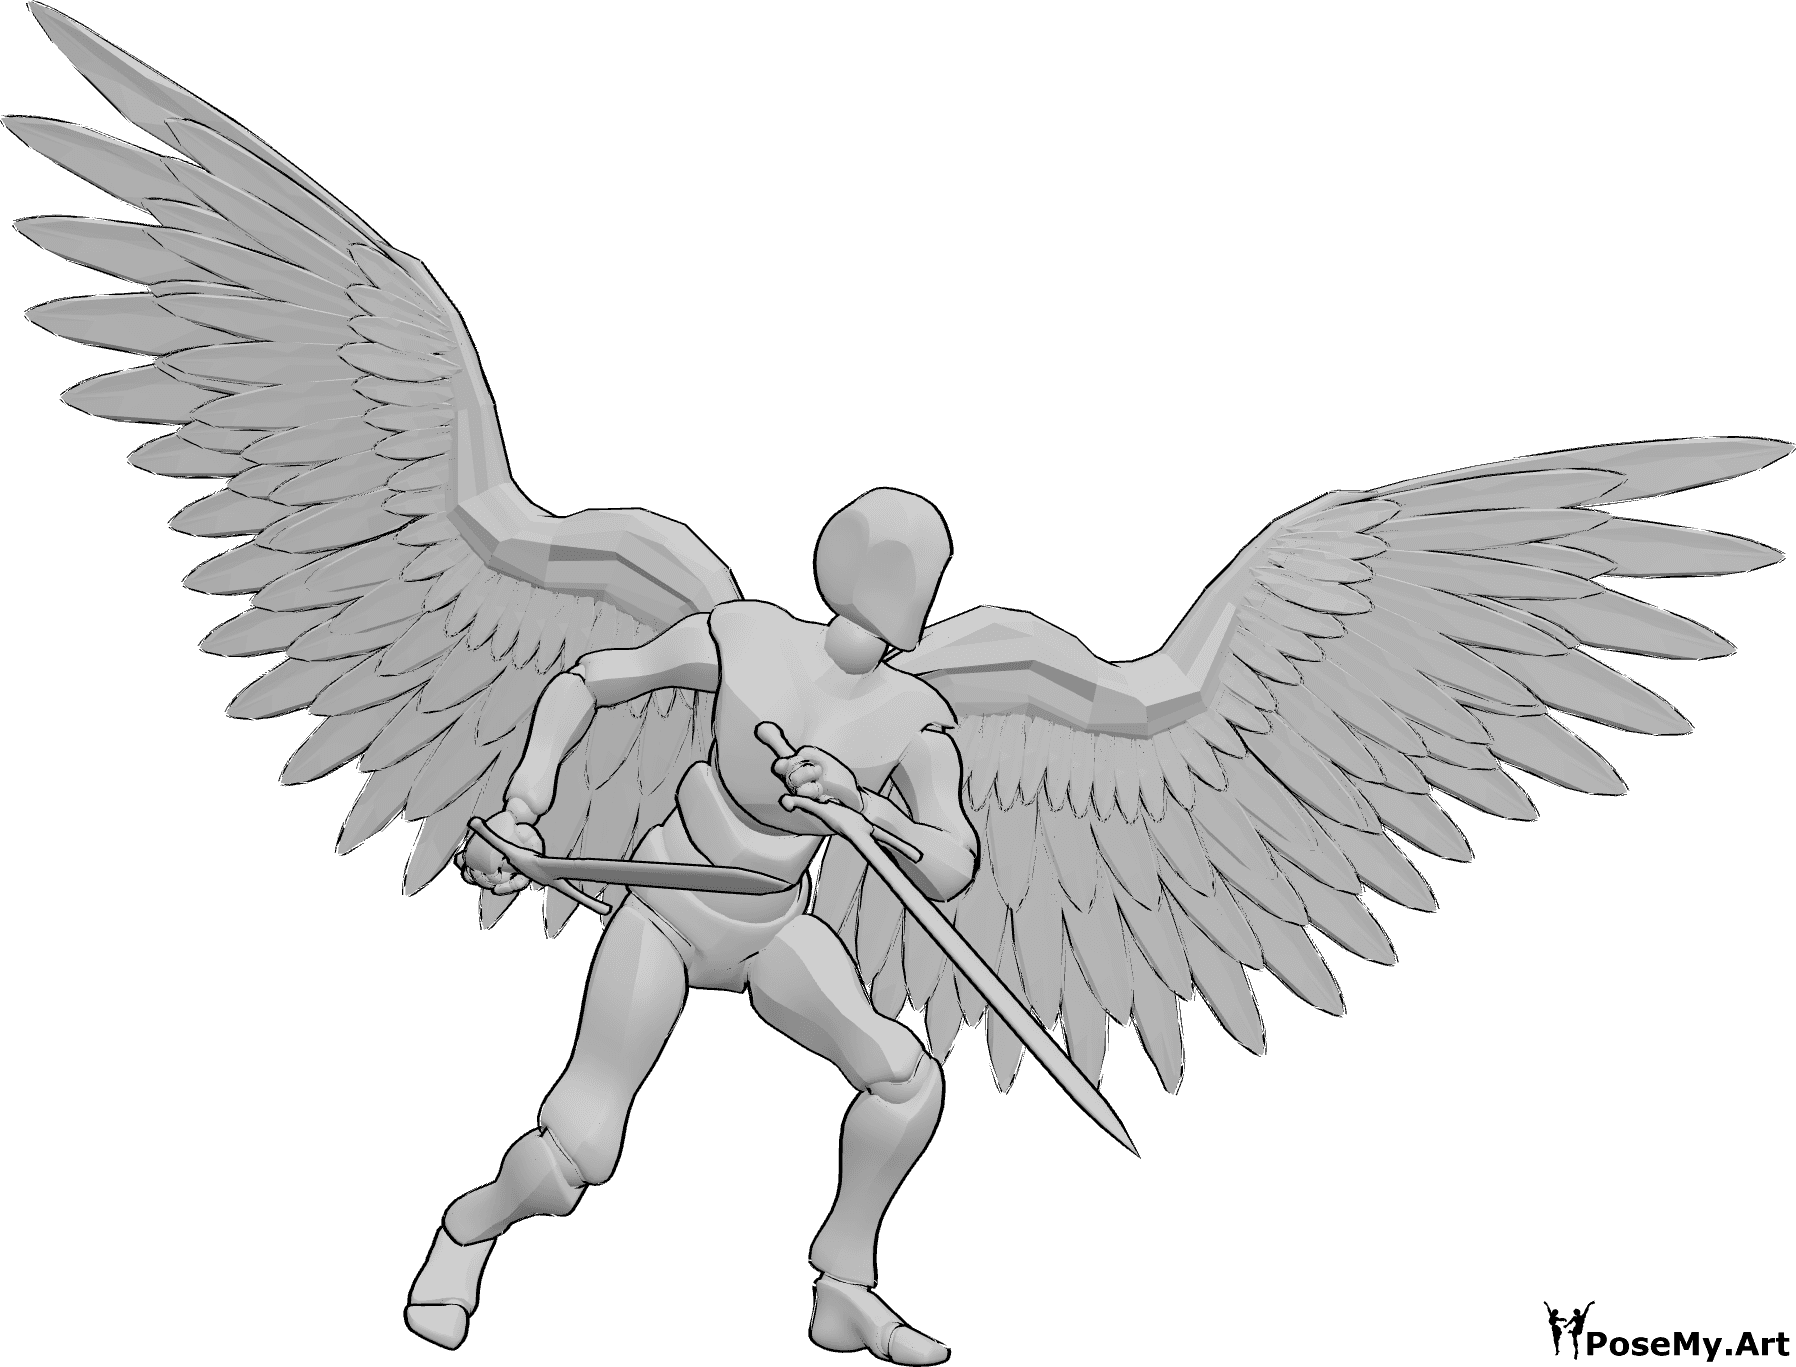 Riferimento alle pose- Posa dell'angelo maschio con spade - L'angelo maschio è in piedi e impugna due grandi spade, pronto a combattere.